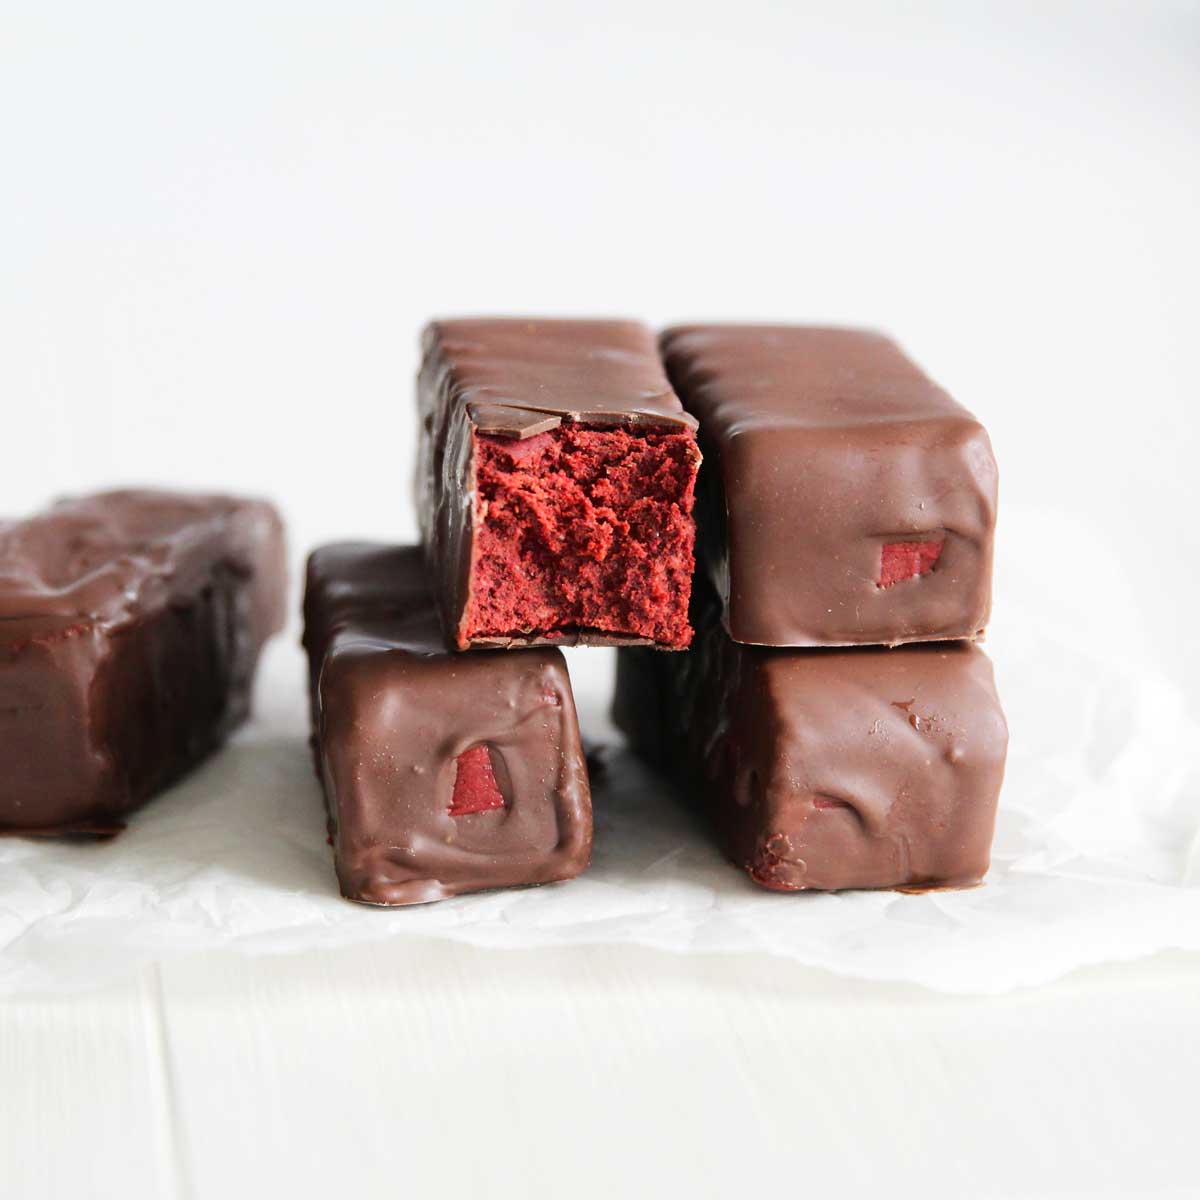 Gluten Free Red Velvet Cake Protein Bars (The Best Guilt-Free Dessert) - Almond Joy Protein Bars